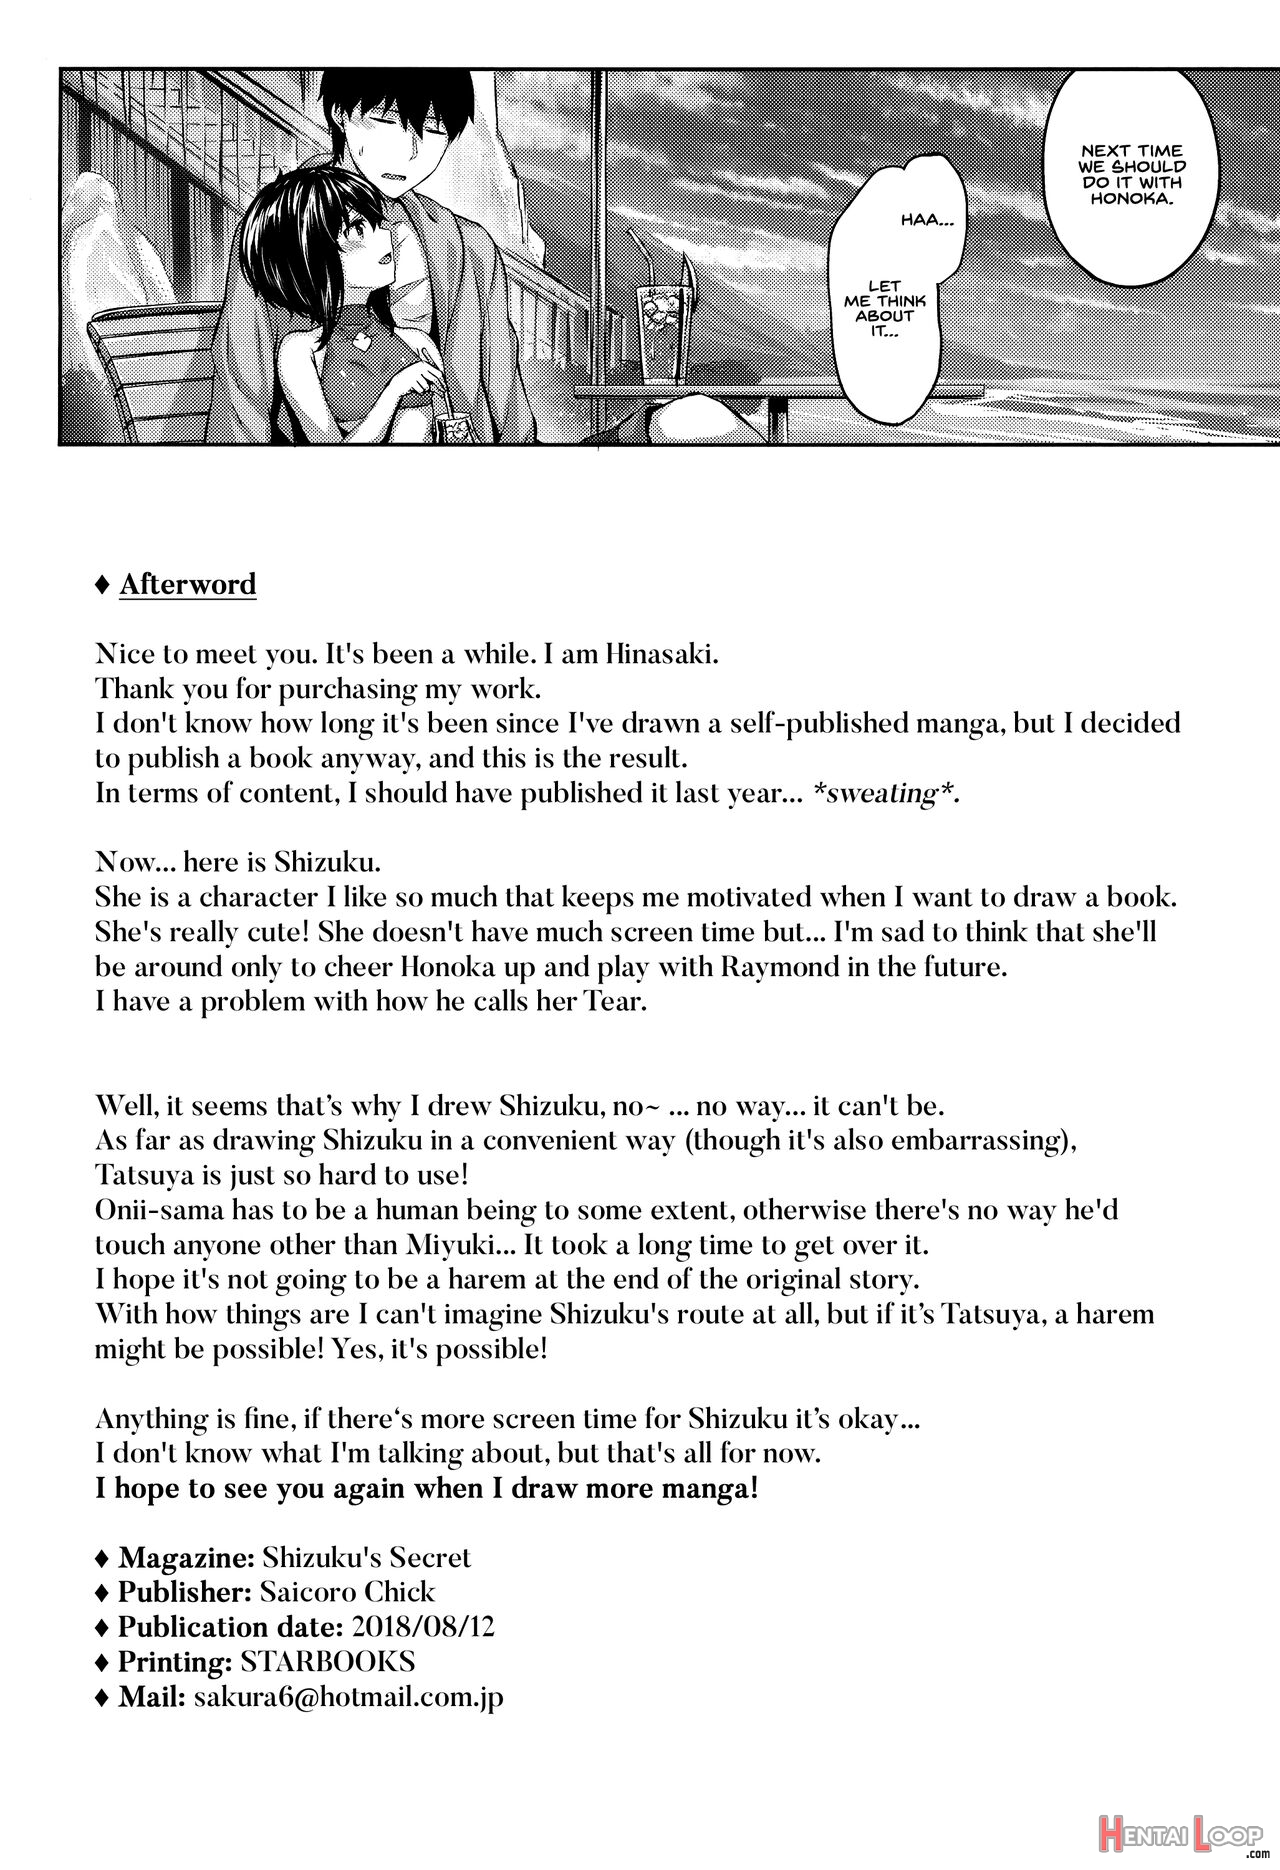 Shizuku's Secret page 22